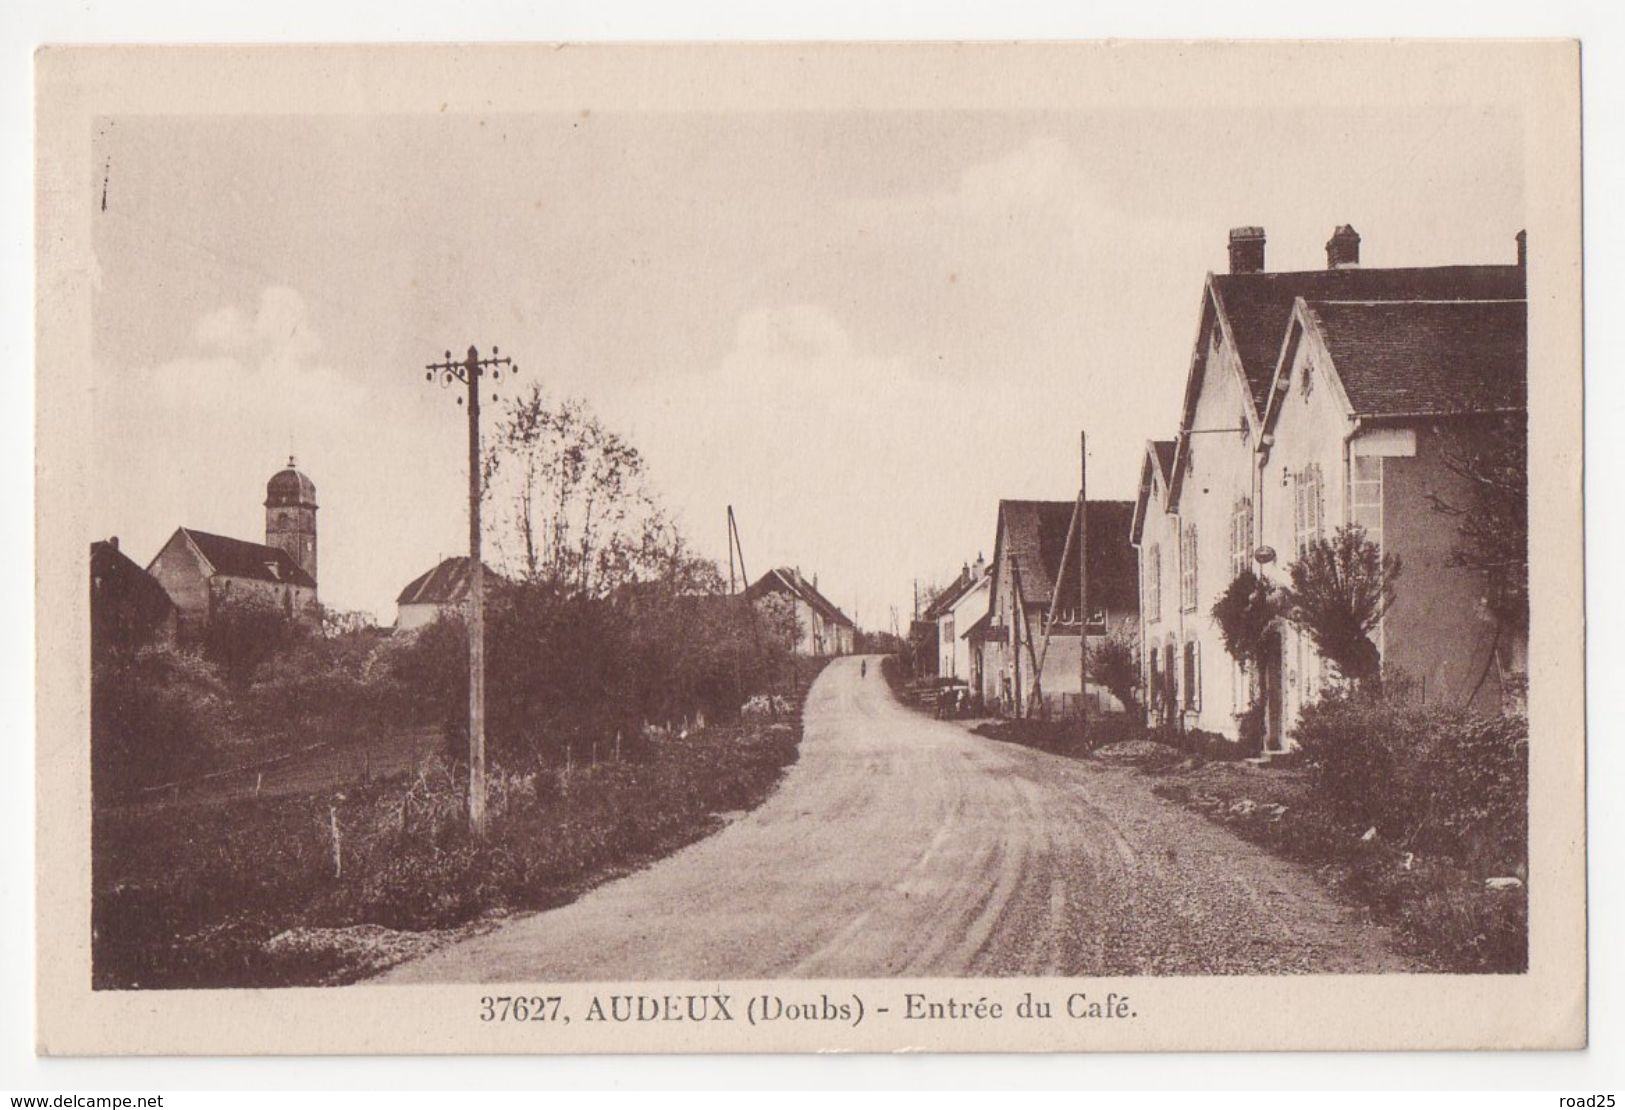 ( 25 ) Lot de 95 cartes postales anciennes du département du Doubs